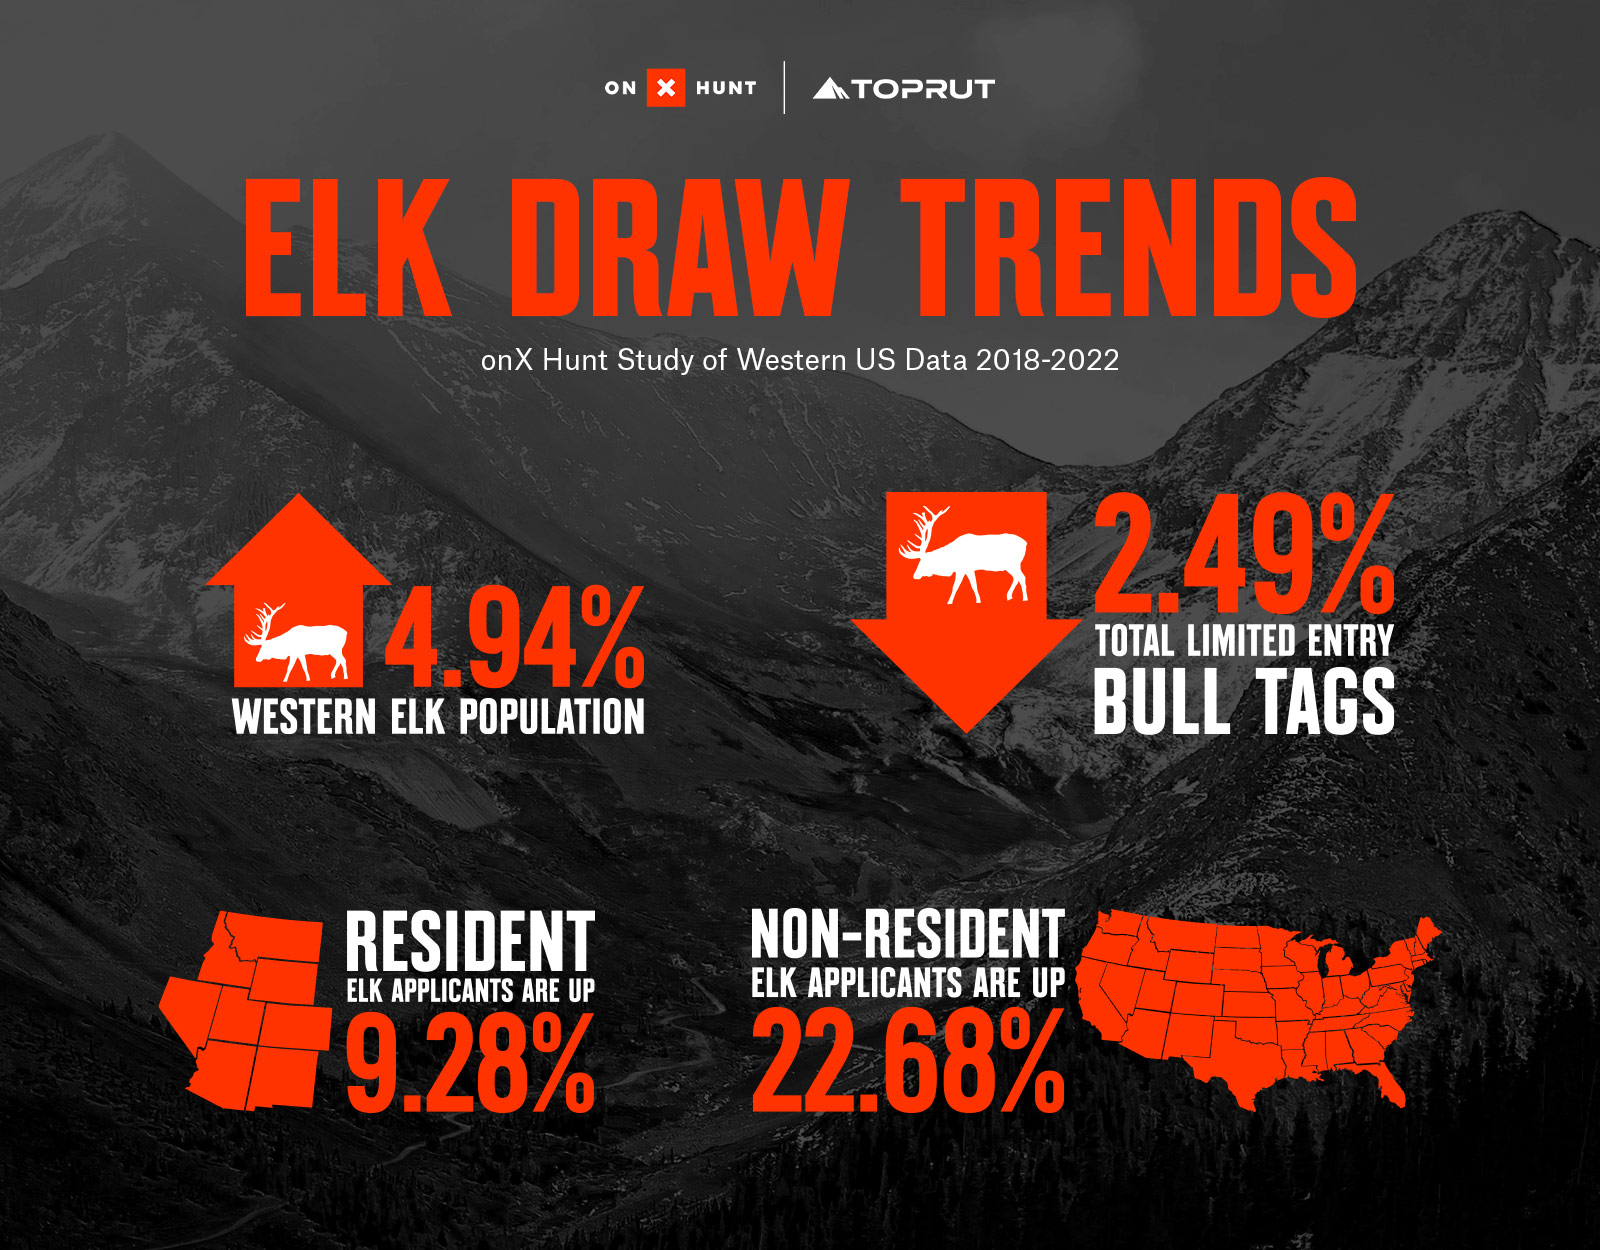 elk draw trends, toprut draw odds